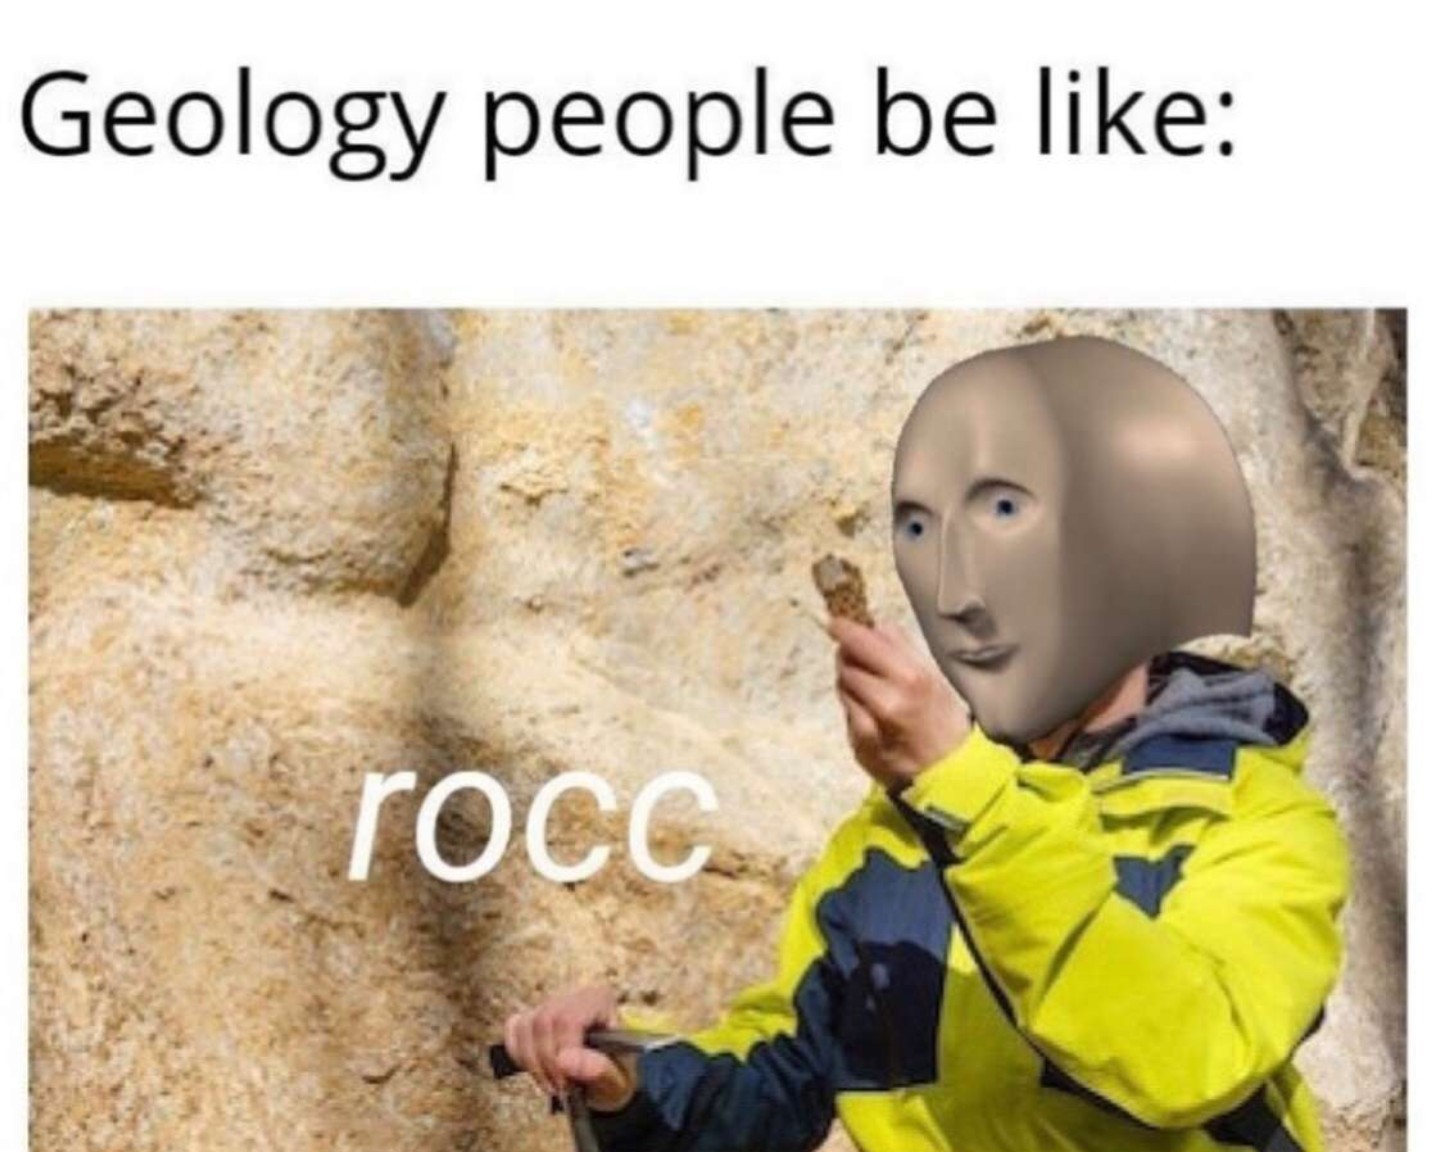 I HIGHKEY LOVE ROCKS - meme